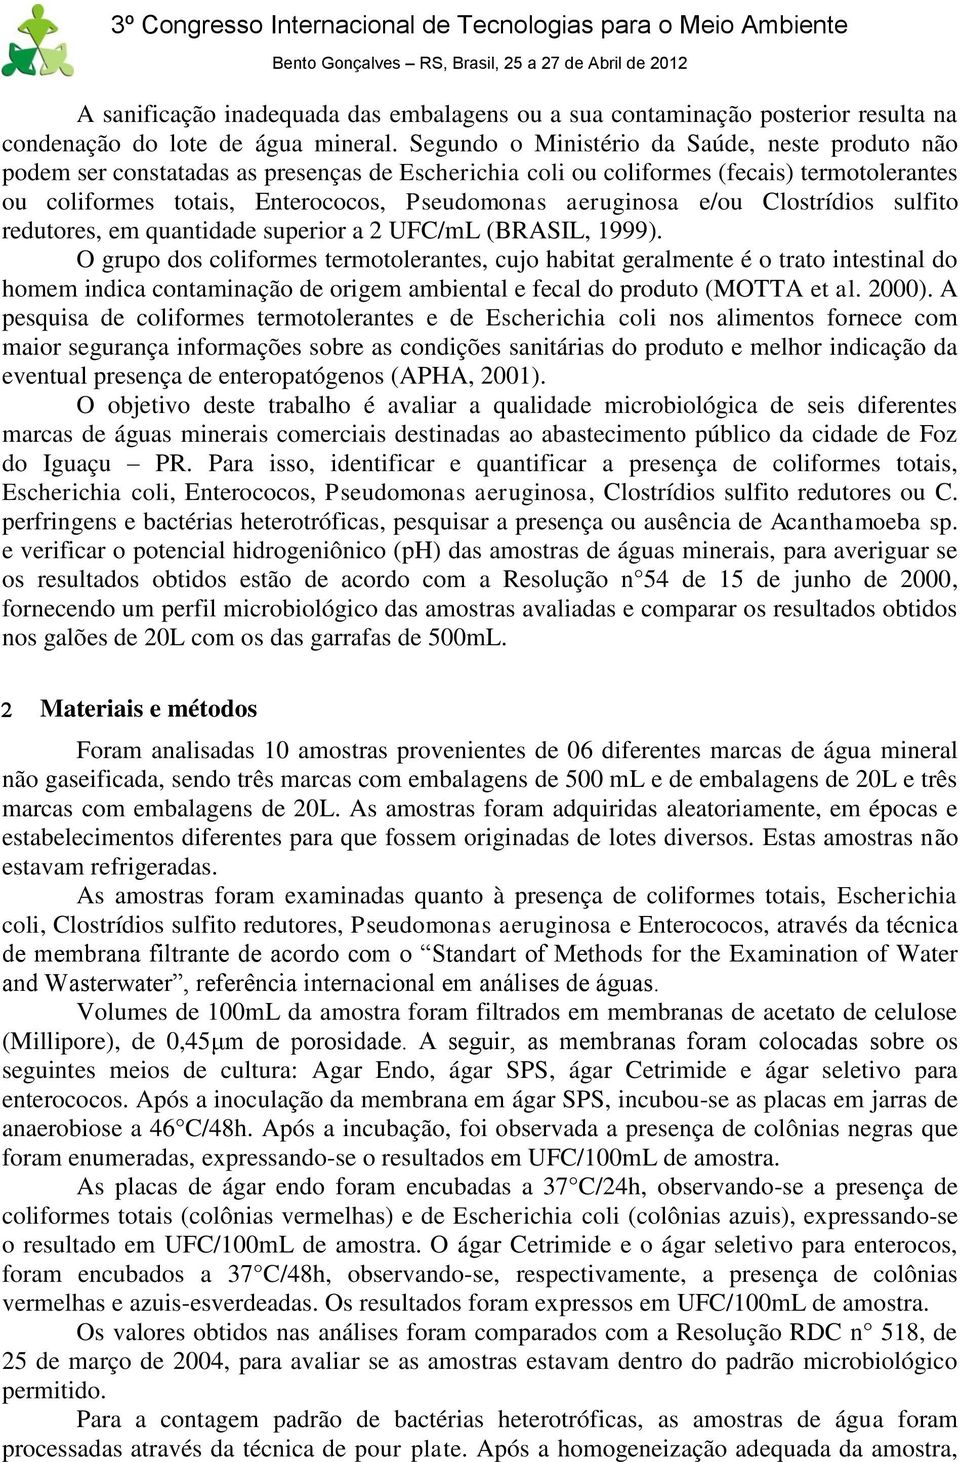 aeruginosa e/ou Clostrídios sulfito redutores, em quantidade superior a 2 UFC/mL (BRASIL, 1999).